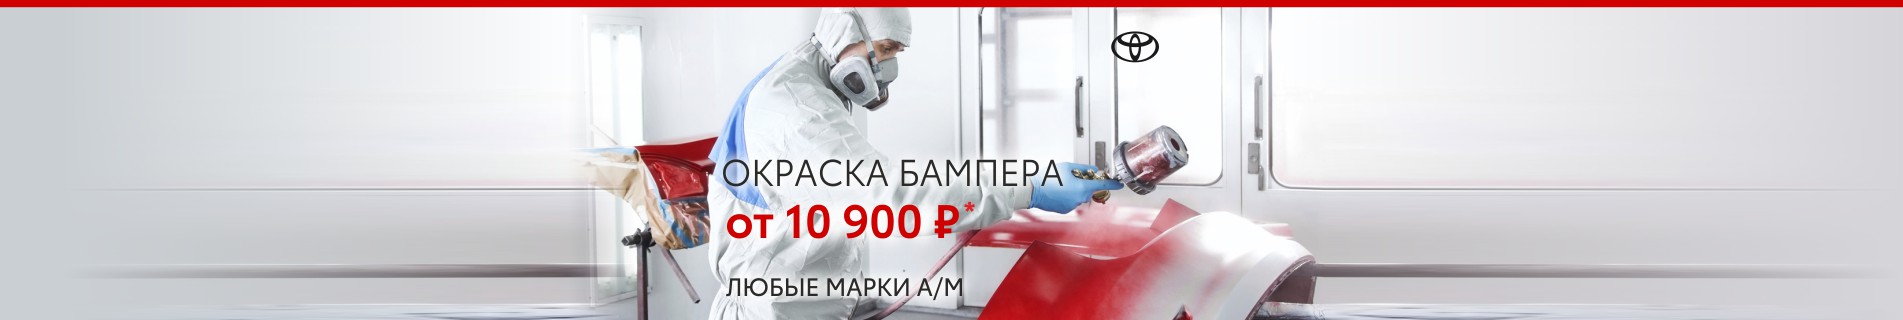 Окраска бампер за 10 900 рублей в автоцентрах Тойота - 